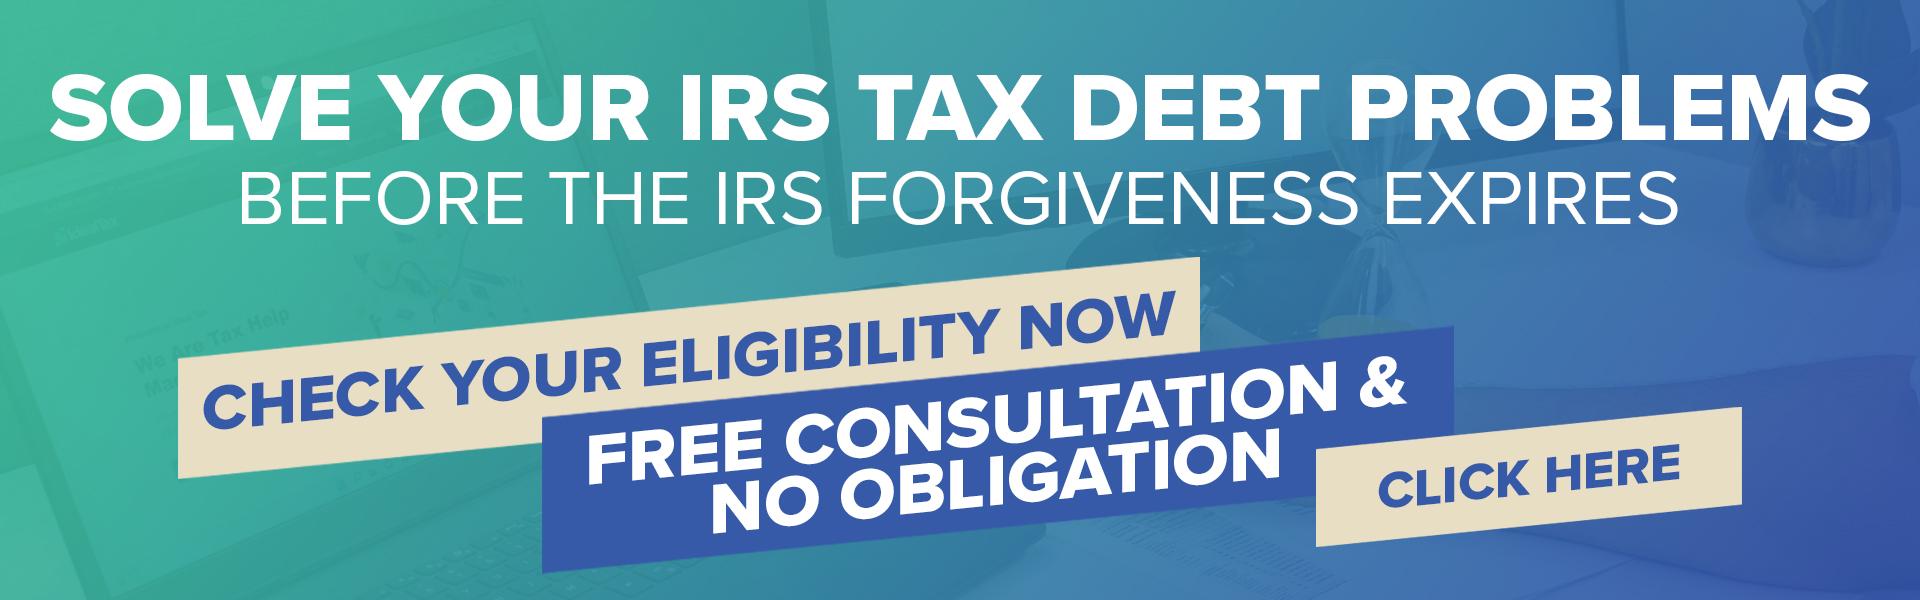 Tax Debt Relief IRS Program Ideal Tax